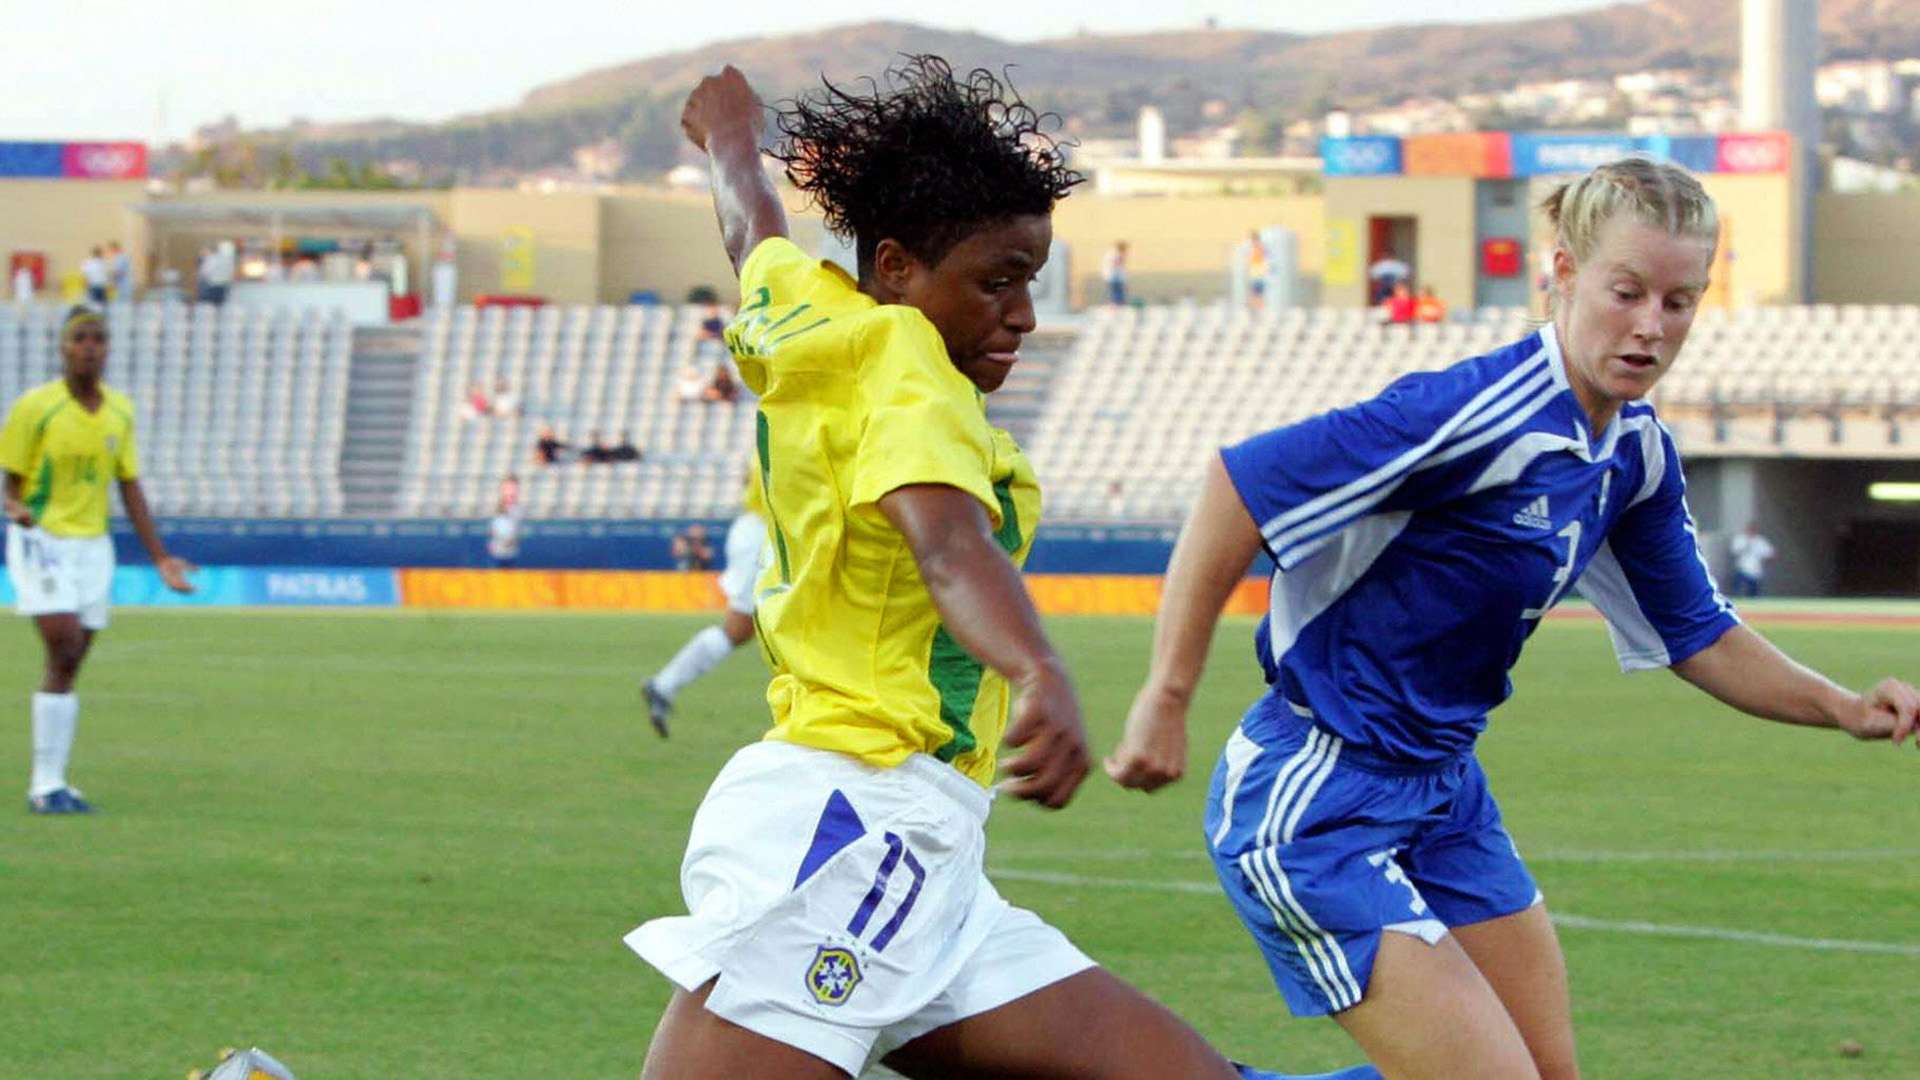 Roseli Seleção Feminina Brasil Olimpiadas Atenas 2004